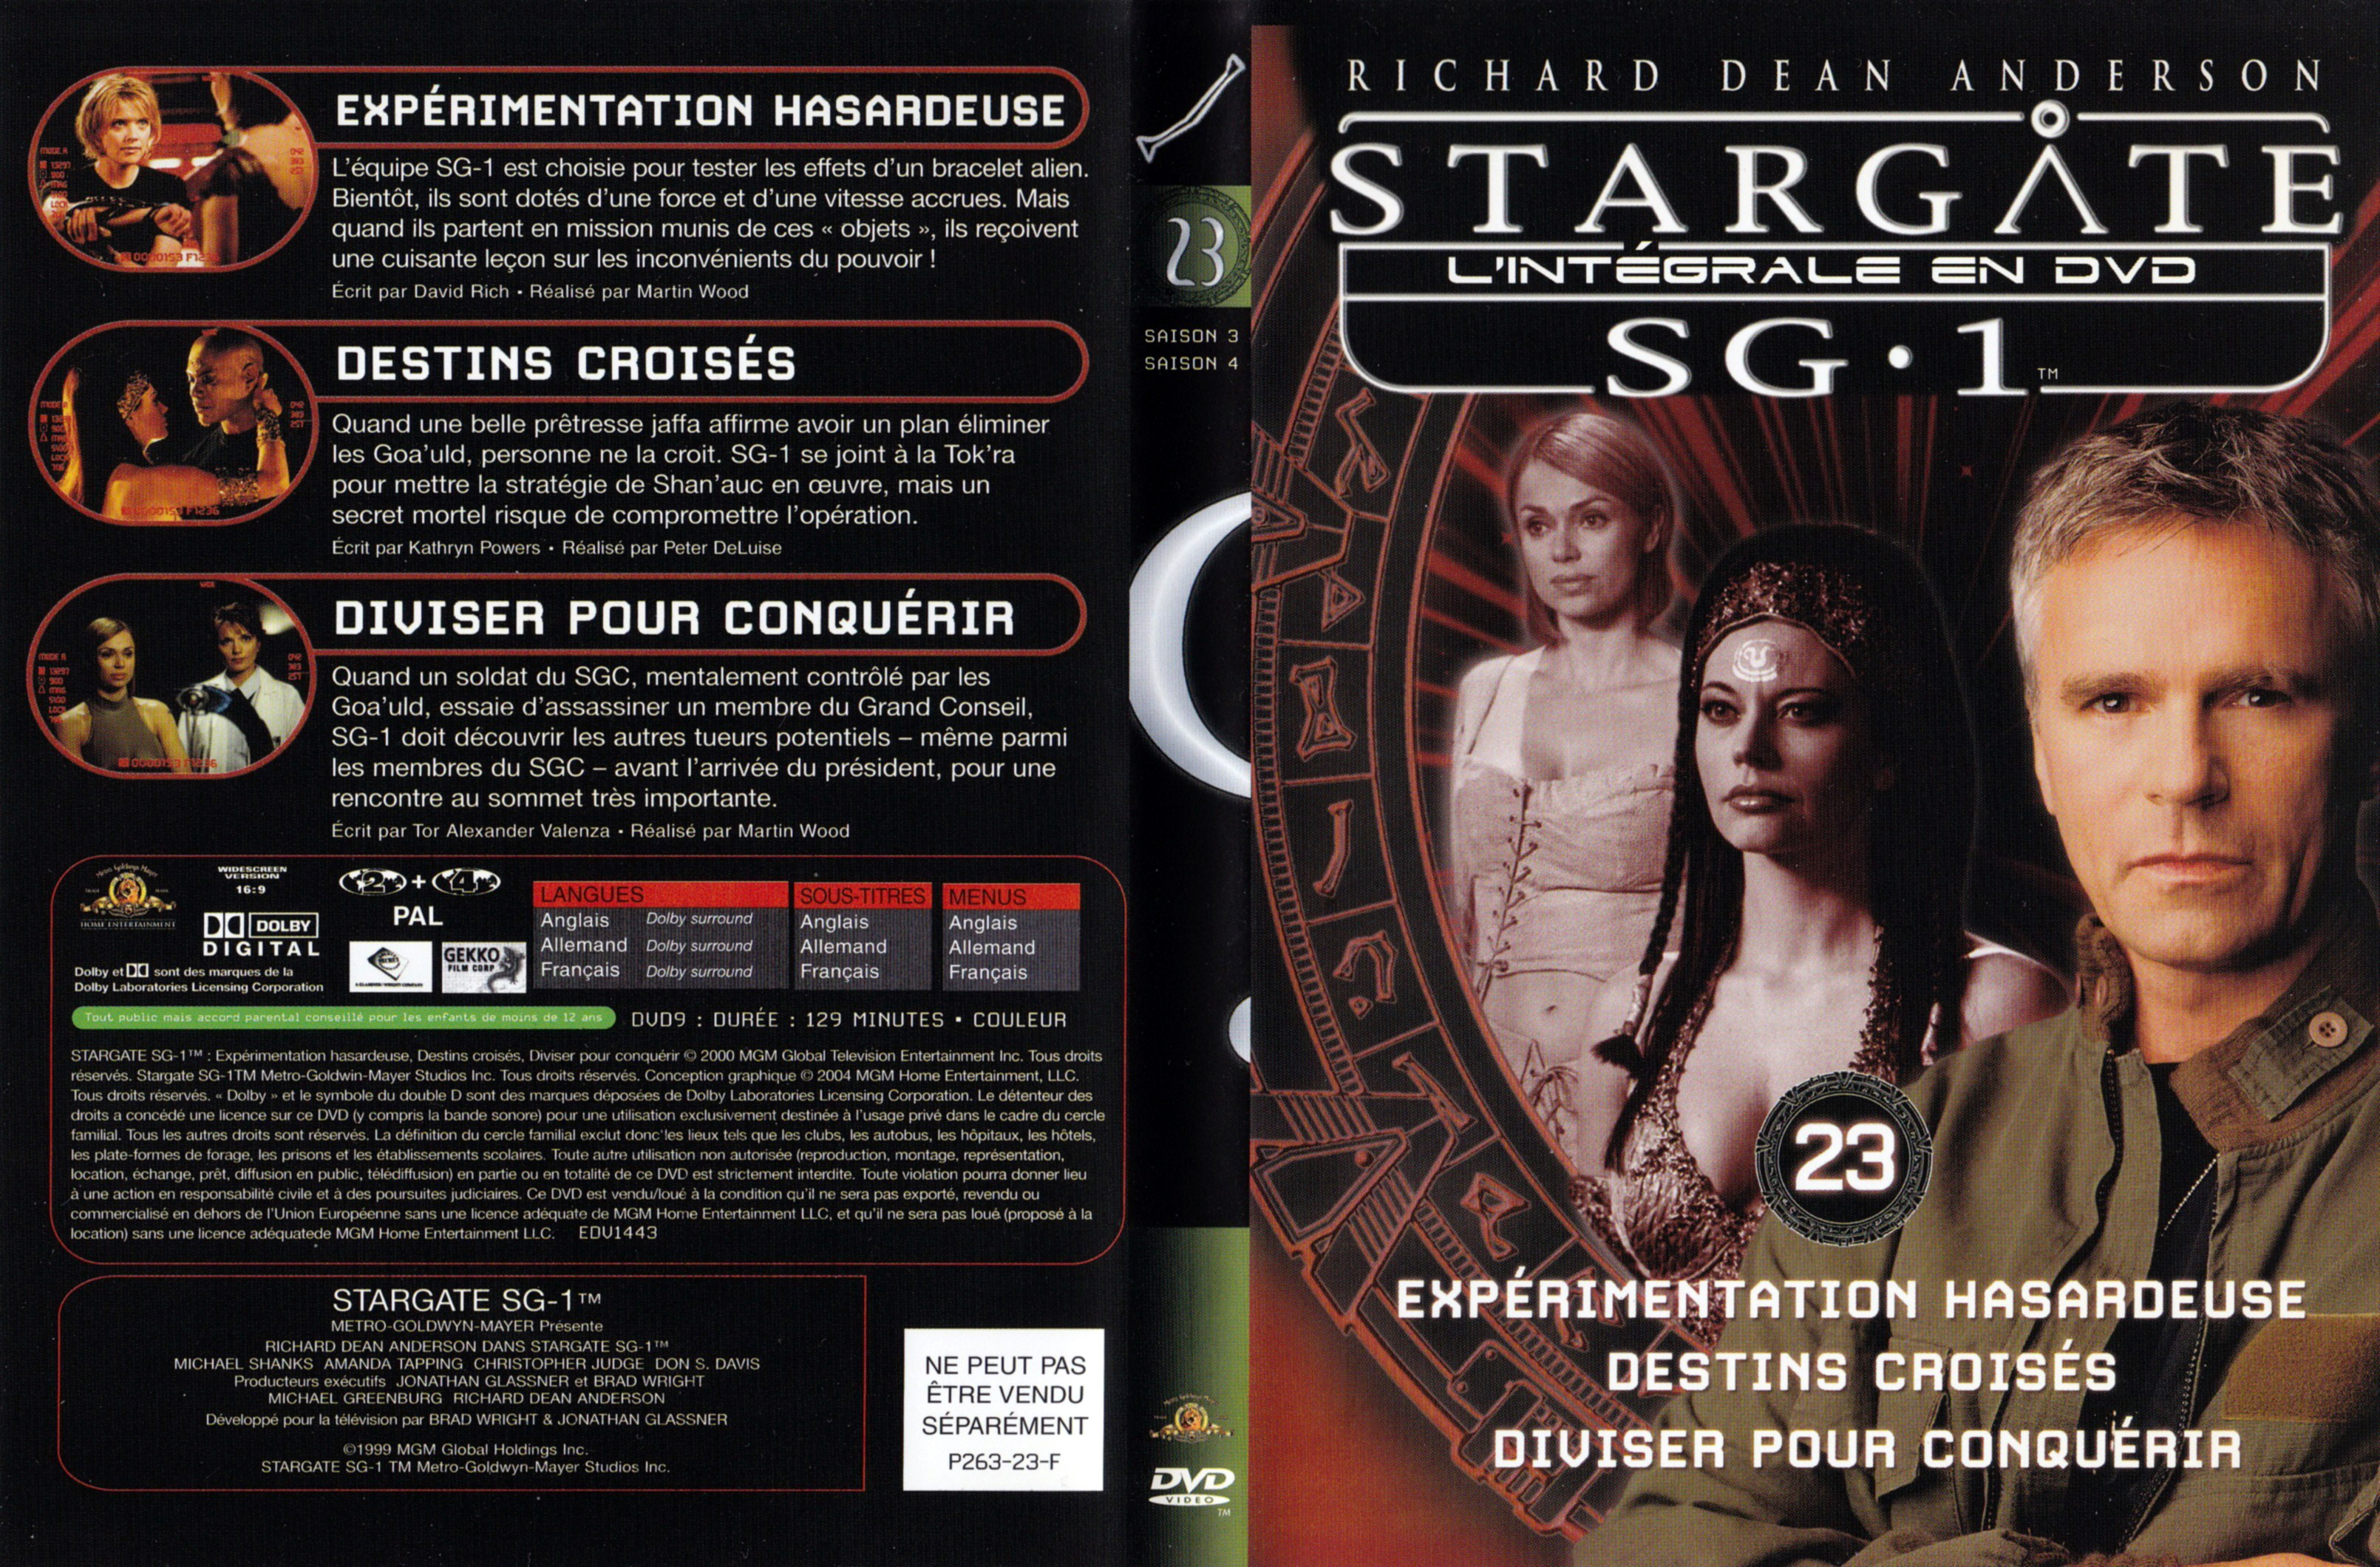 Jaquette DVD Stargate SG1 Intgrale Saison 4 vol 23